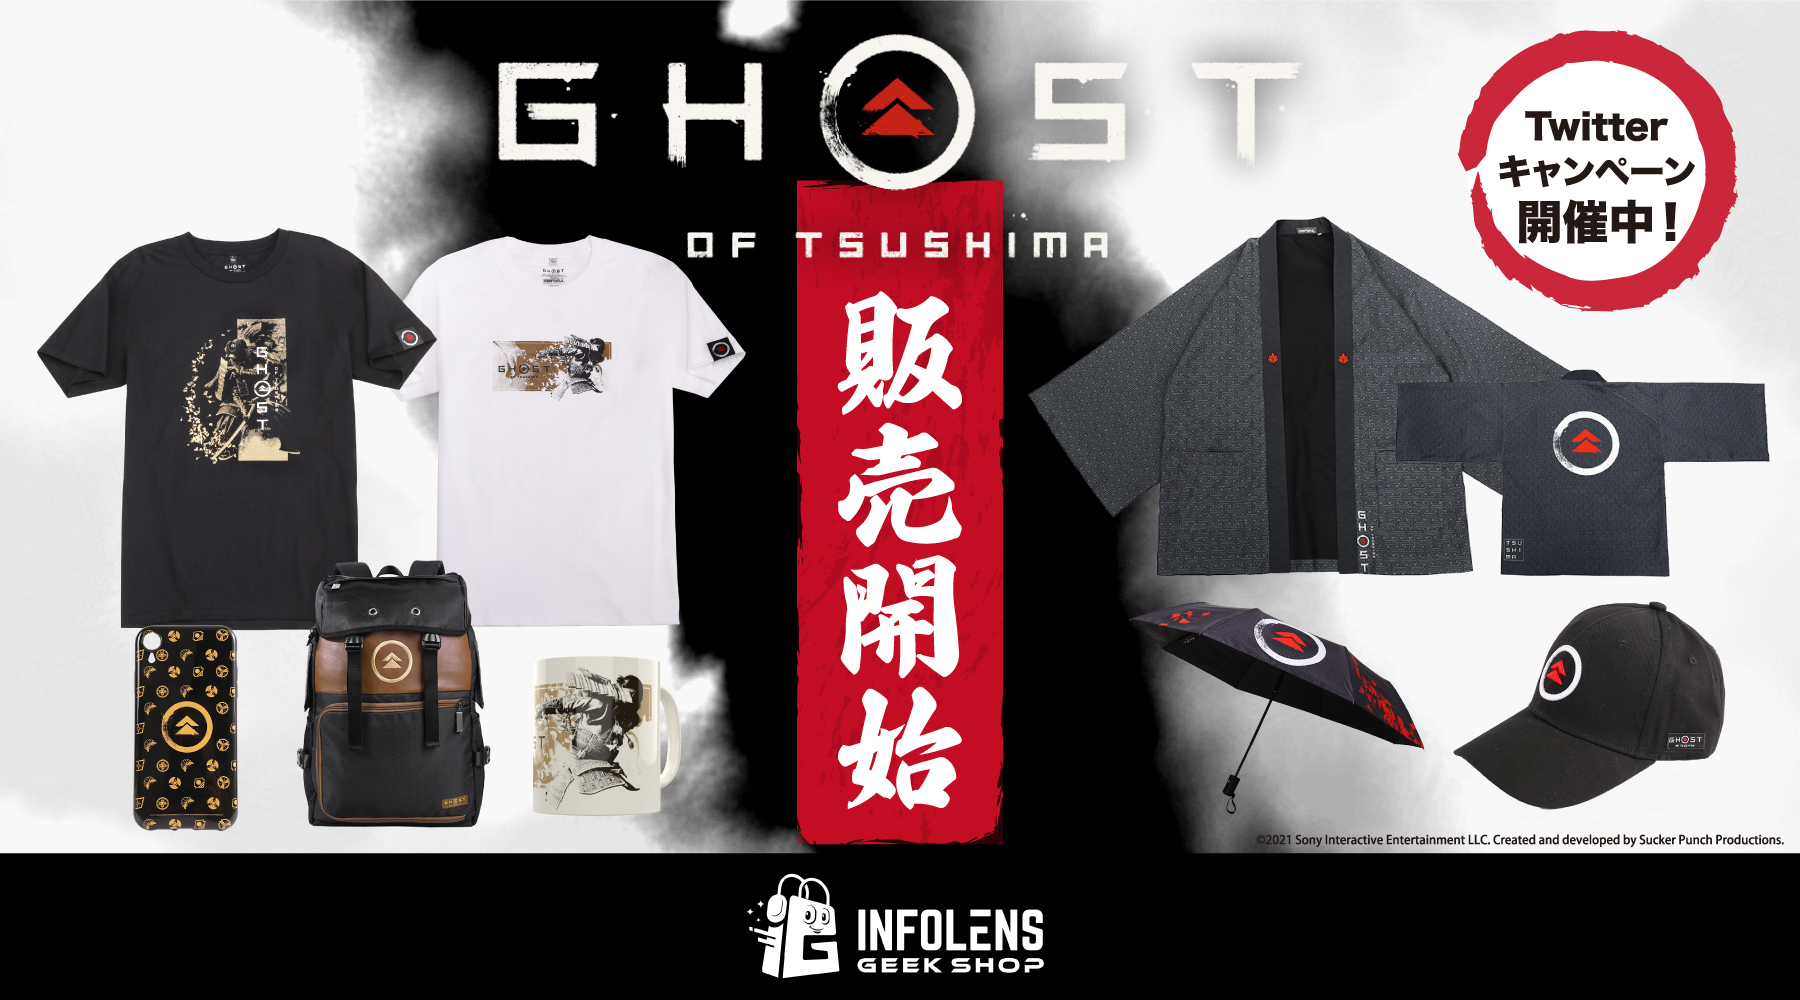 『Ghost of Tsushima』(ゴースト・オブ・ツシマ)の
公式ライセンスグッズの一般発売が開始！